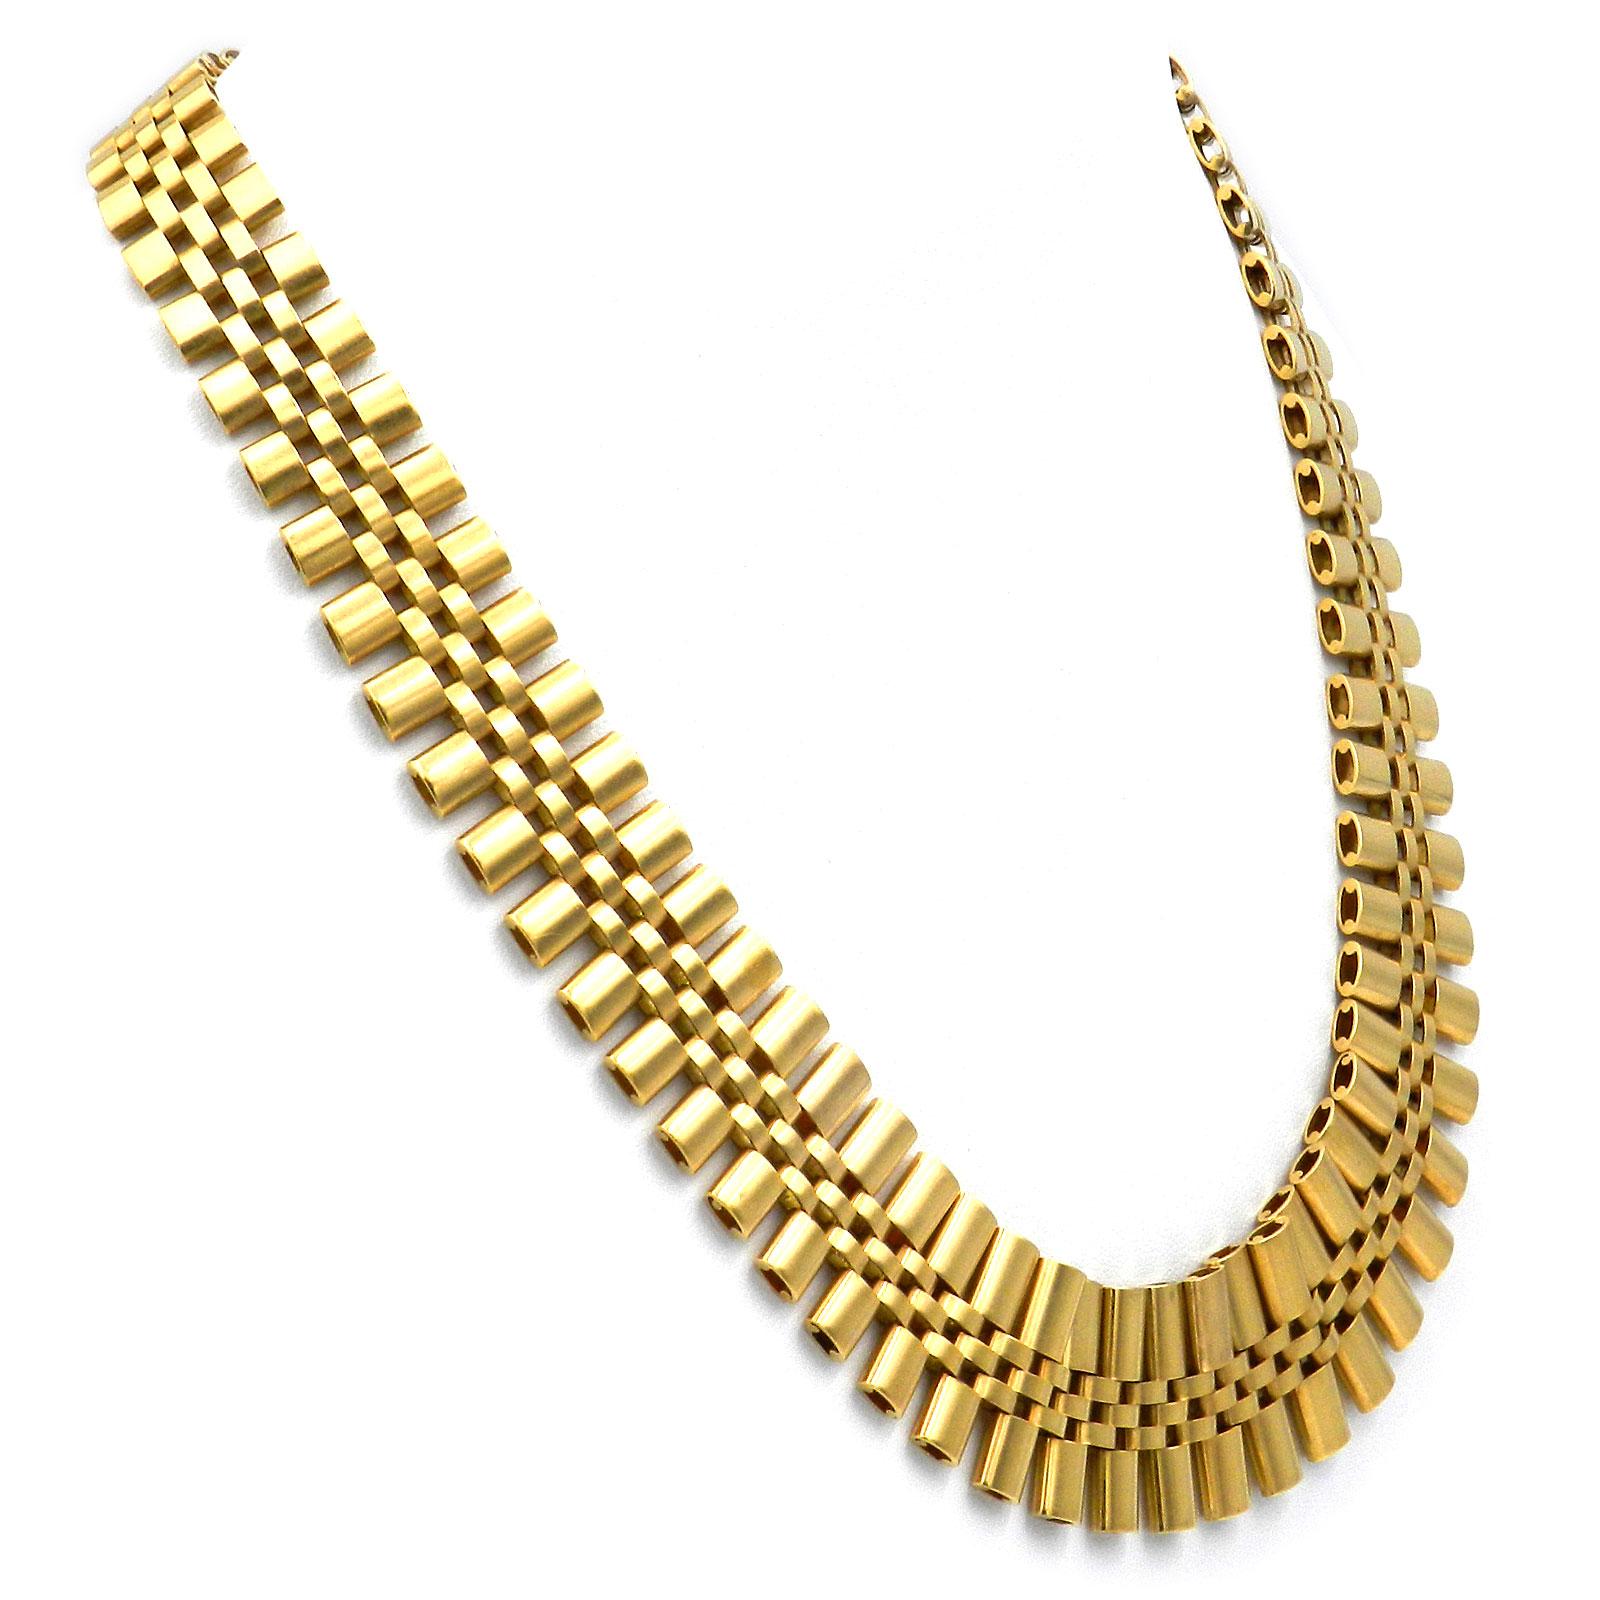 Retro-Halskette aus 18 Karat Gold, um 1960

Dekorative Halskette im etruskischen Stil. Das schwere, flach anliegende Halsband aus hochwertigem Gold besteht aus einzelnen Gliedern in einem Ziegelsteinmuster. Wie ein schmeichelnder Kragen legt sich